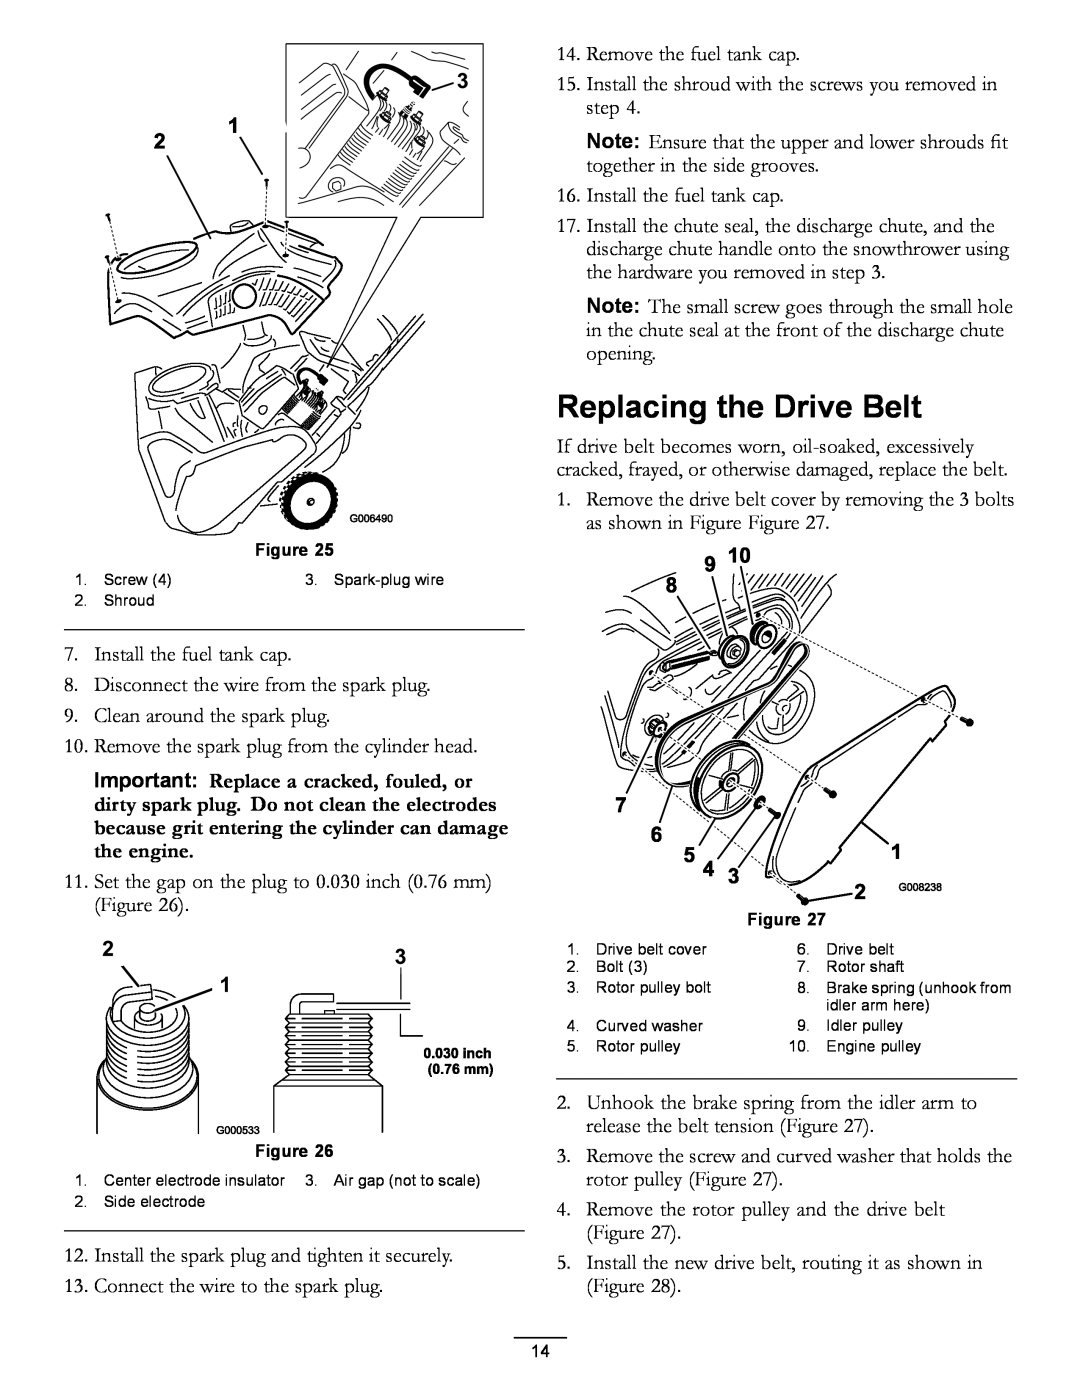 Toro 38584, 38583 owner manual Replacing the Drive Belt 